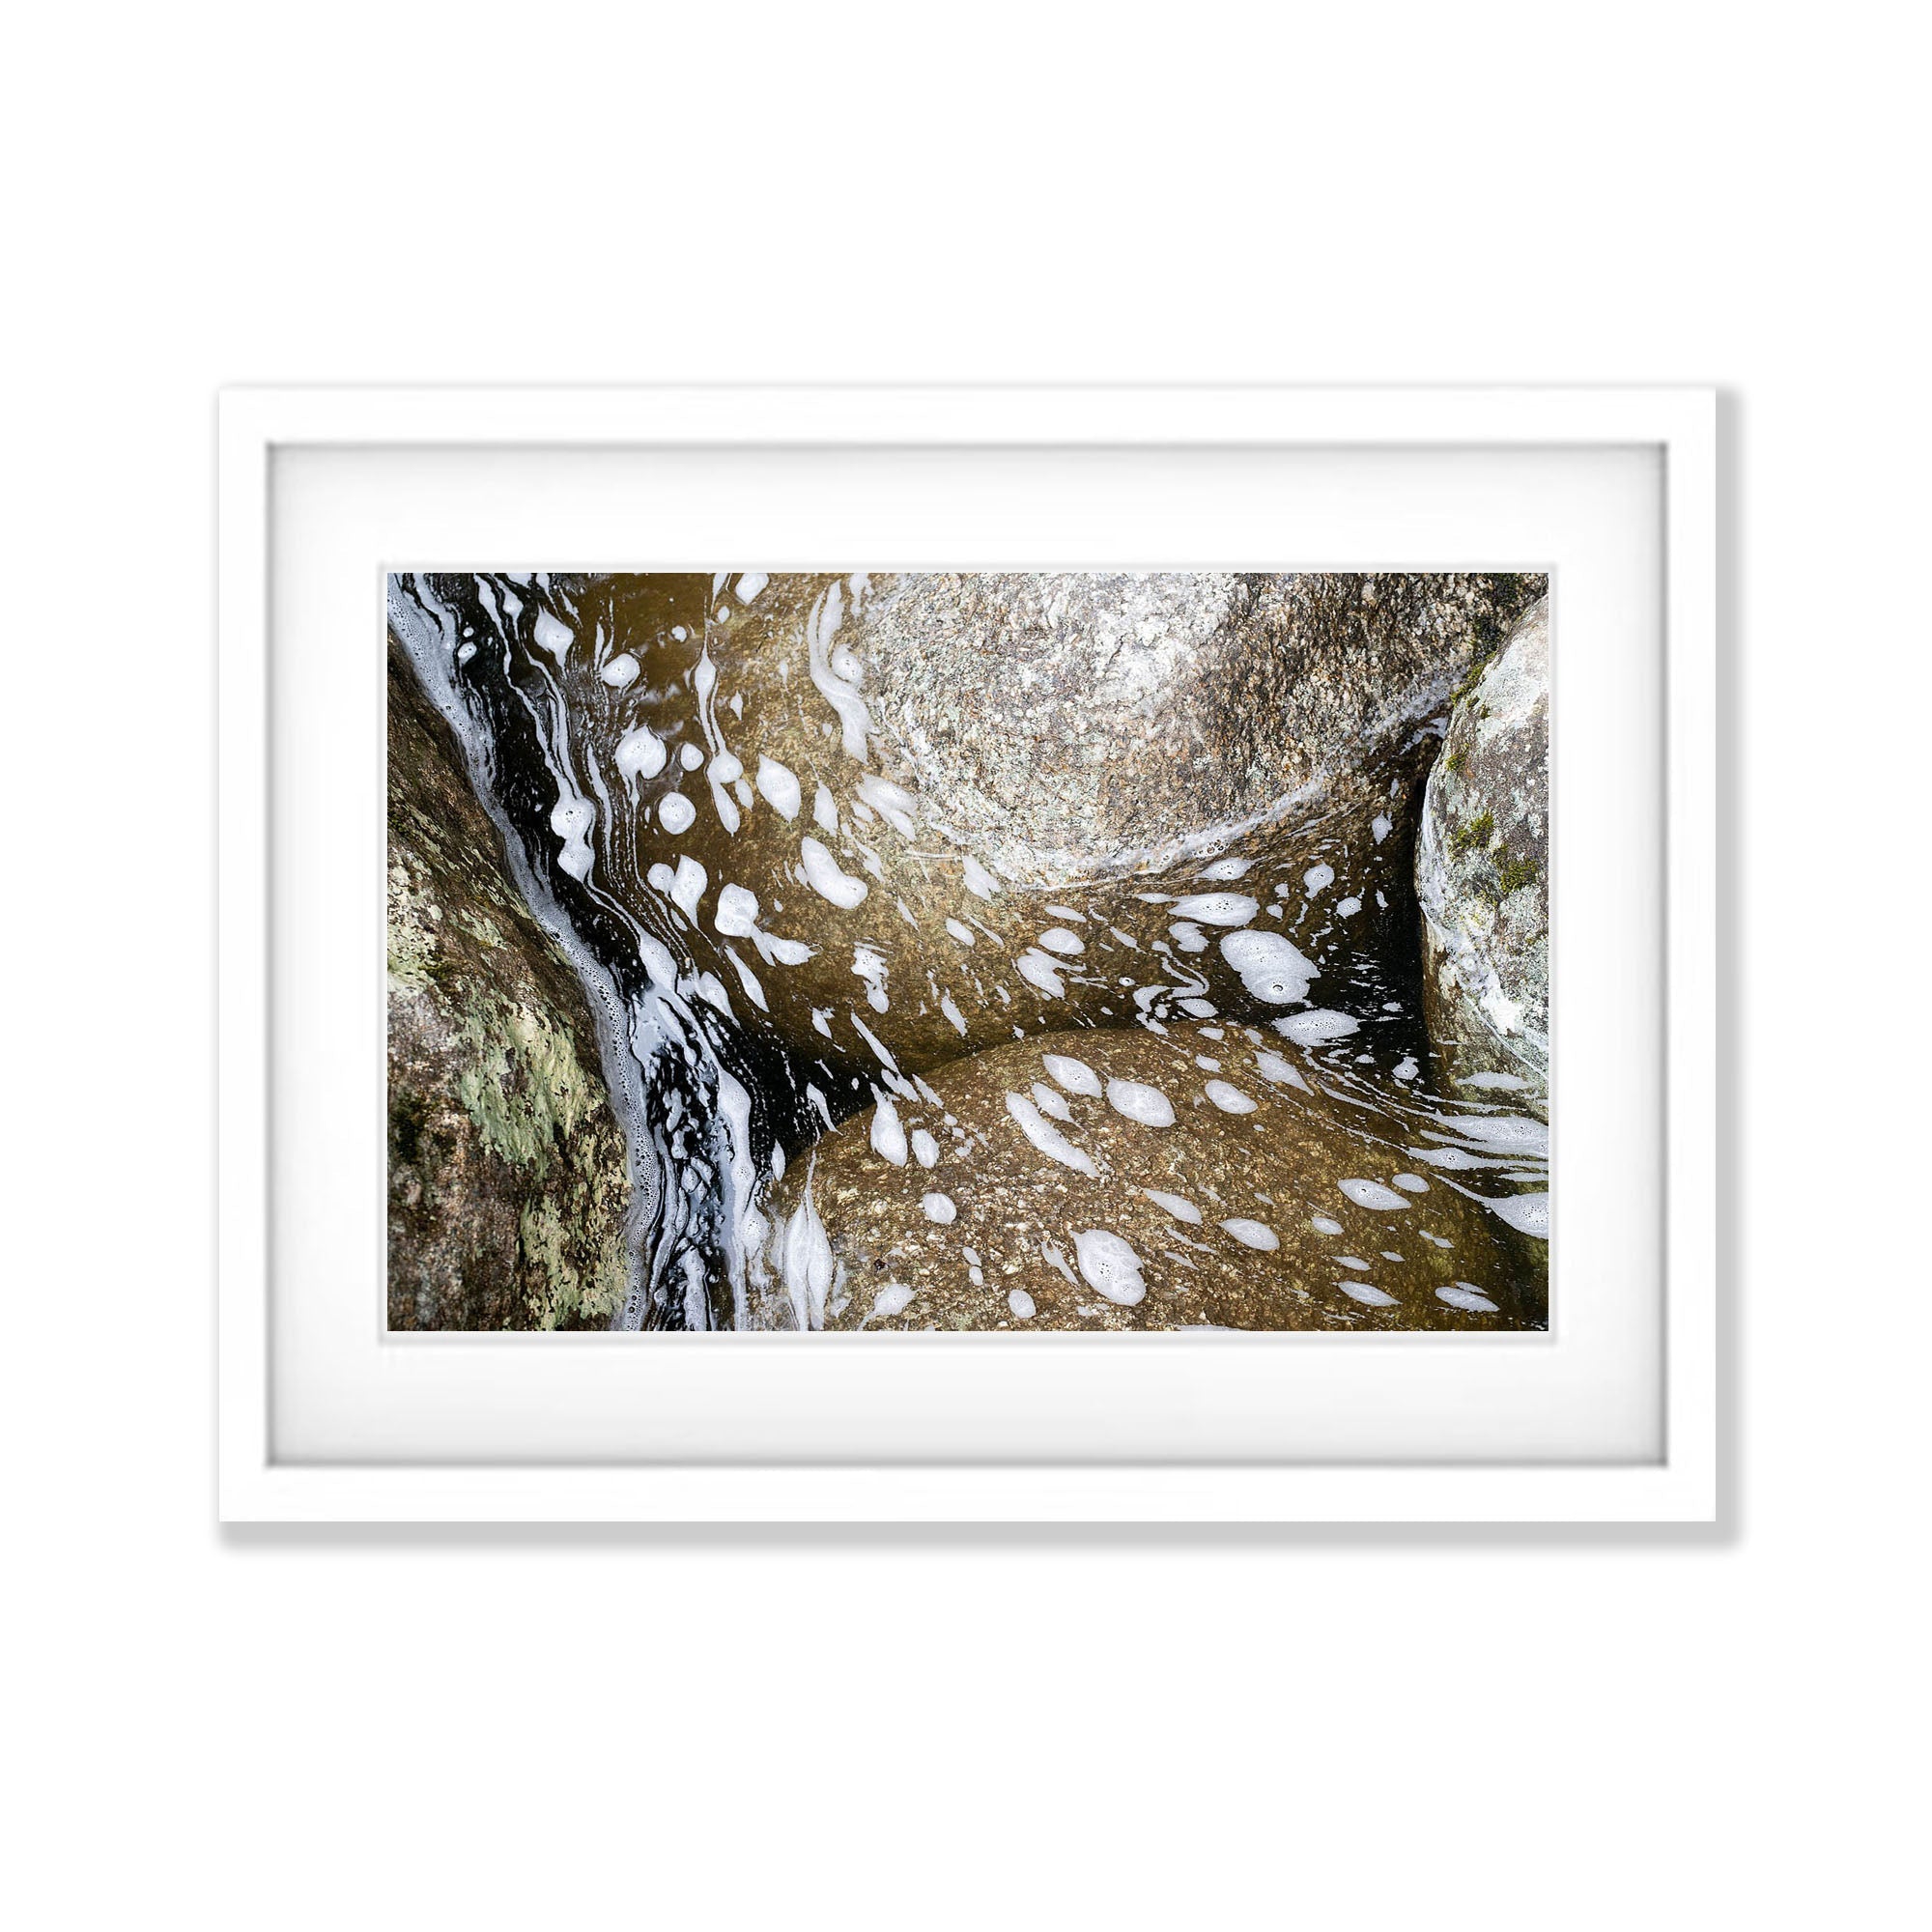 Foam on water, Babinda Boulders, Far North Queensland